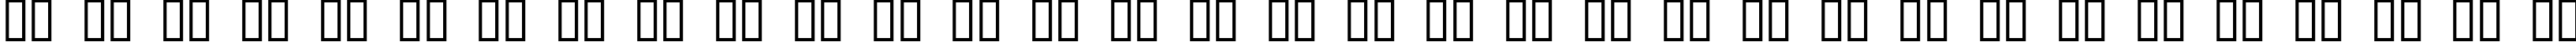 Пример написания русского алфавита шрифтом QuickStrike